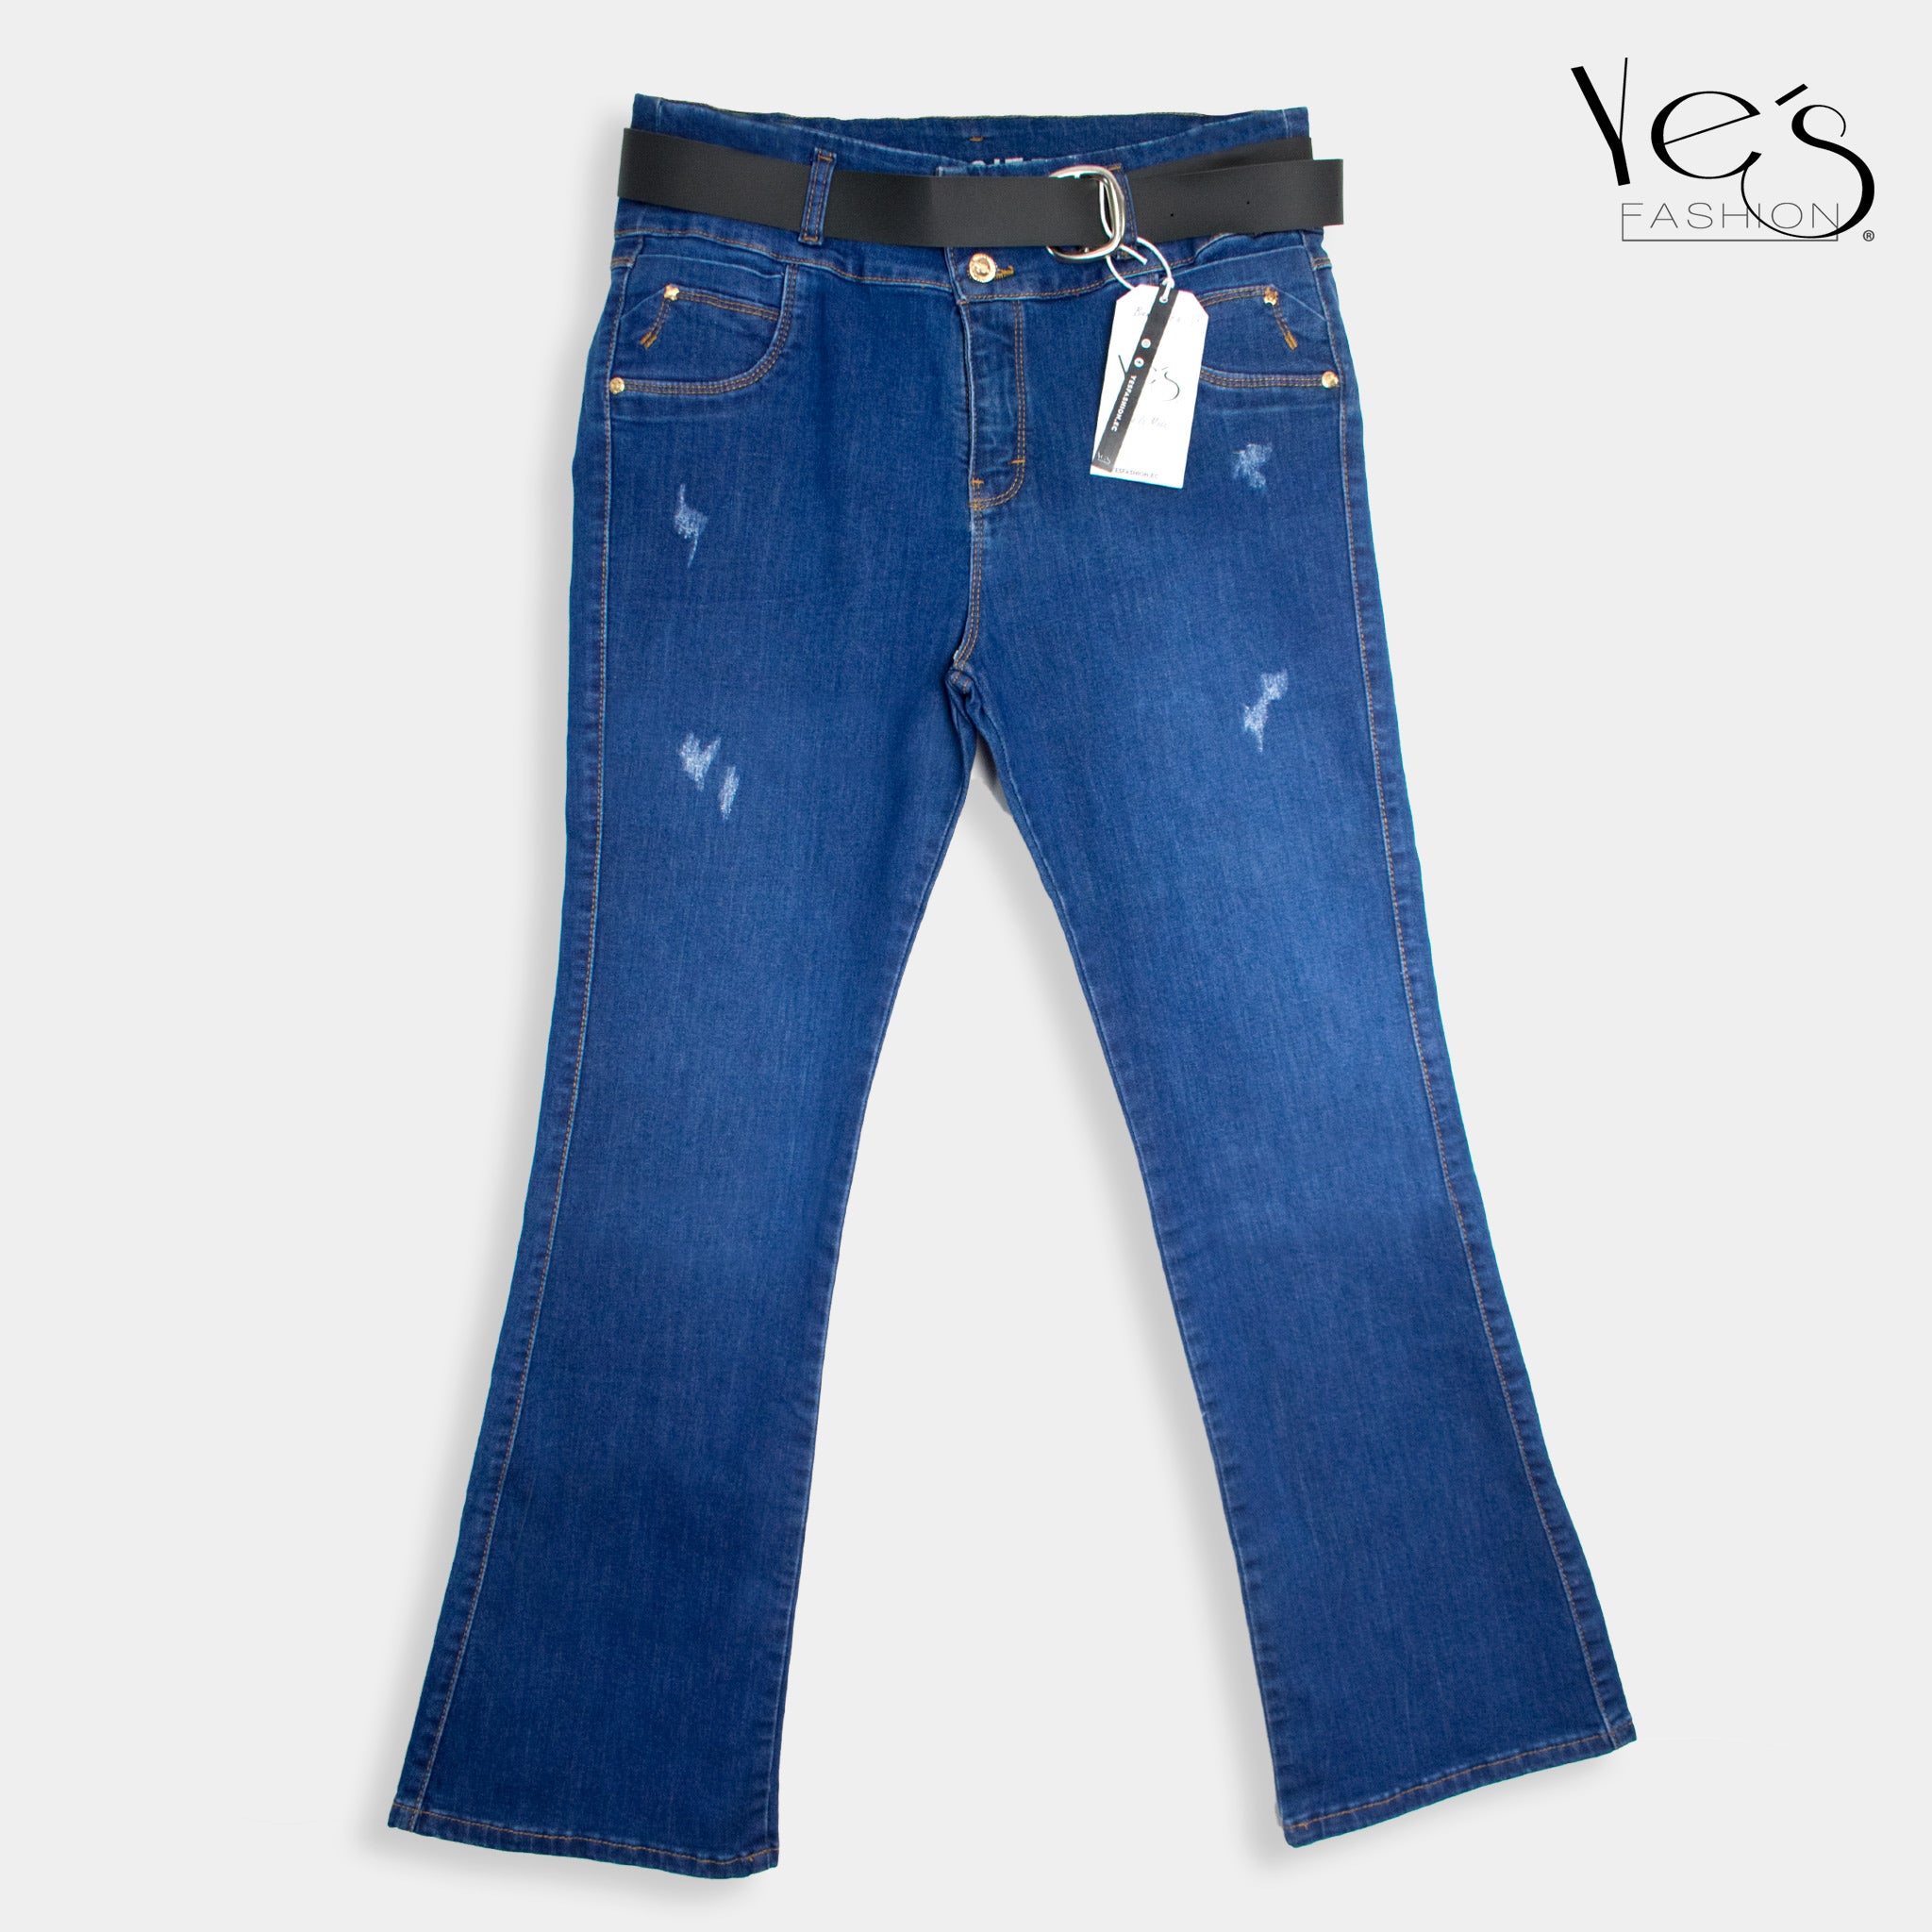 Jeans Acampanados Plus Size - Estilo Moderno con Basta Acampanada - (Color: Azul Tradicional)